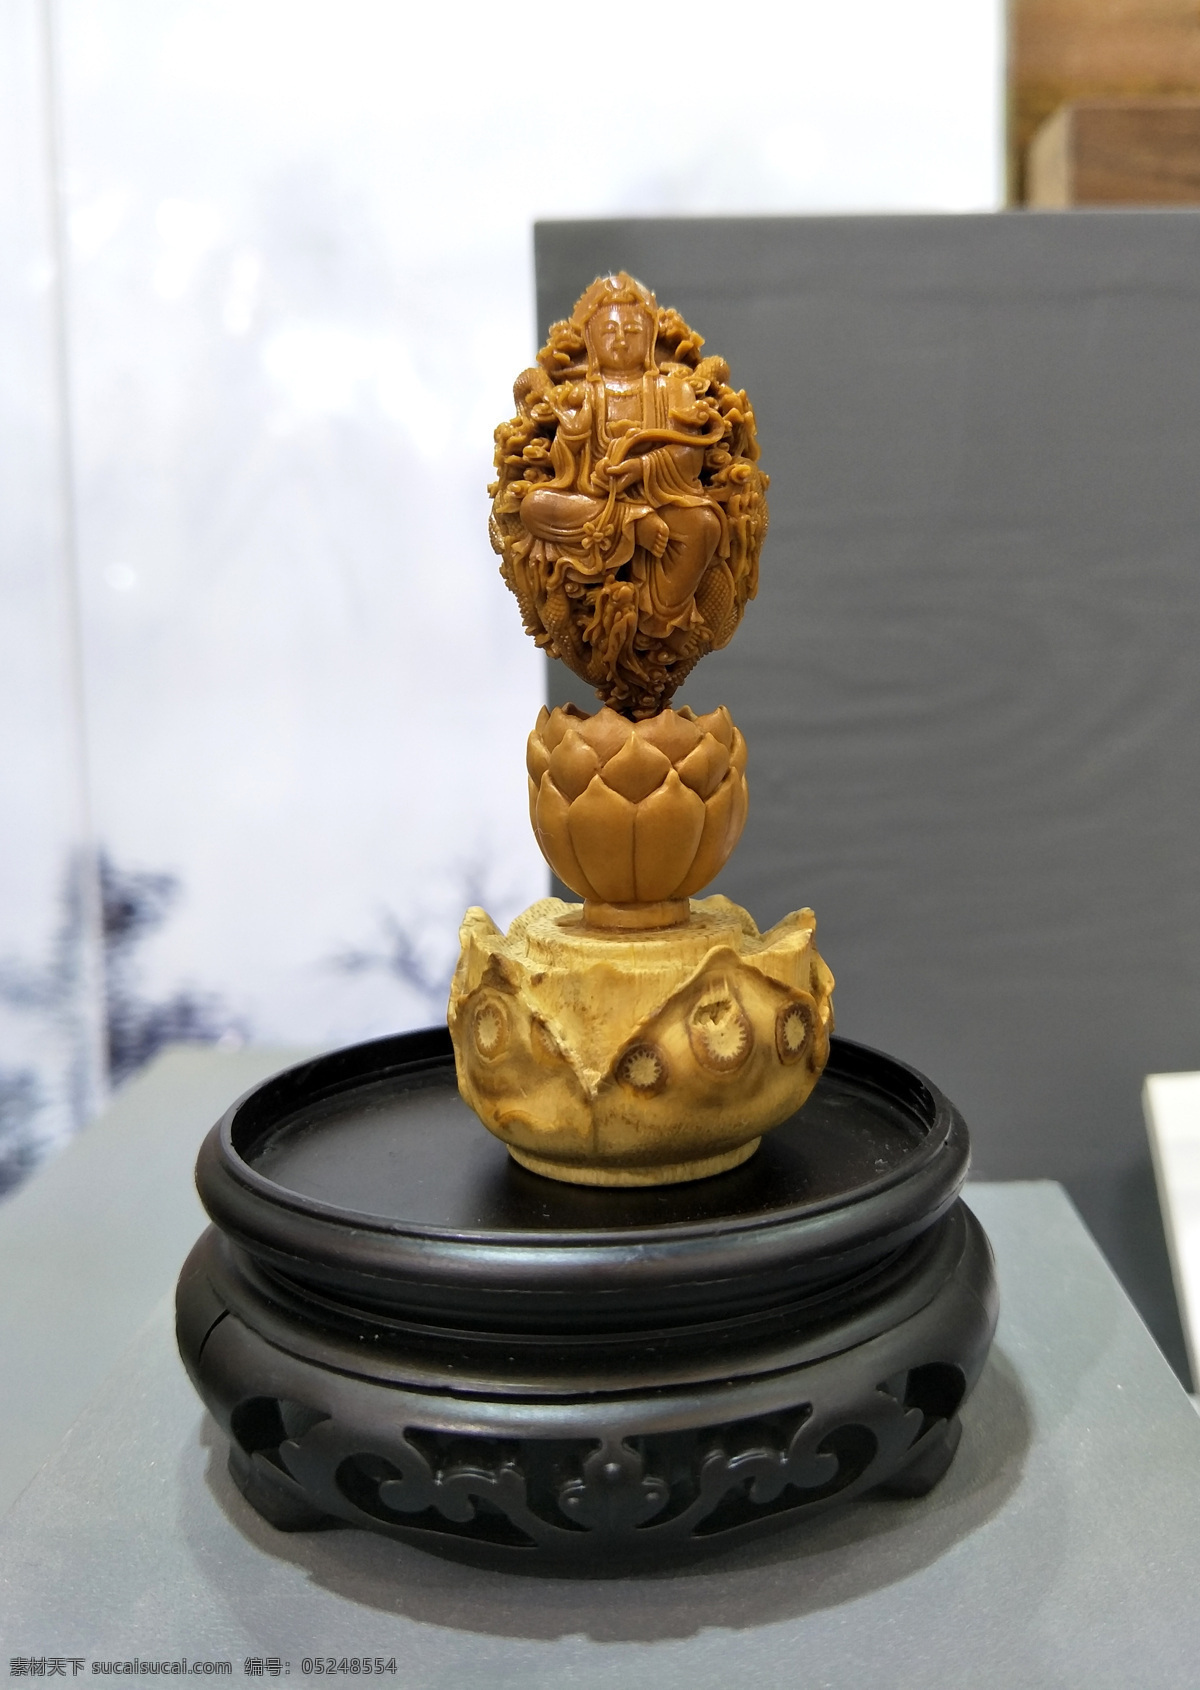 核雕 工艺 艺术 工艺品 核 展品 木质 底座 仙人 雕刻 佛 文化艺术 传统文化